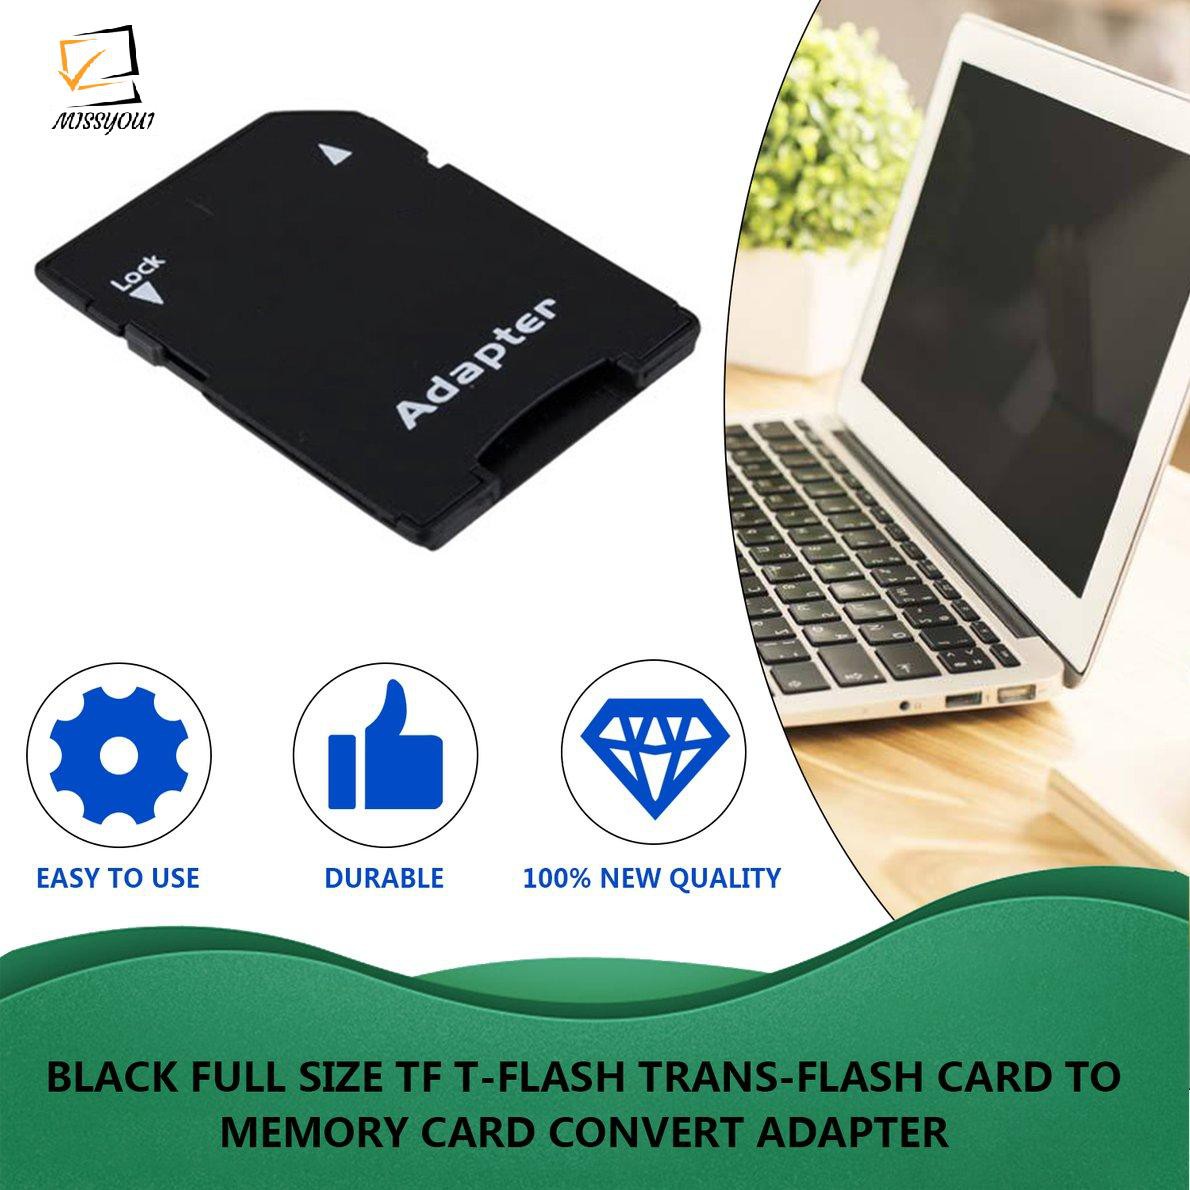 Thẻ chuyển đổi thẻ TF T-Flash Trans-flash sang thẻ nhớ kích thước bình thường màu đen